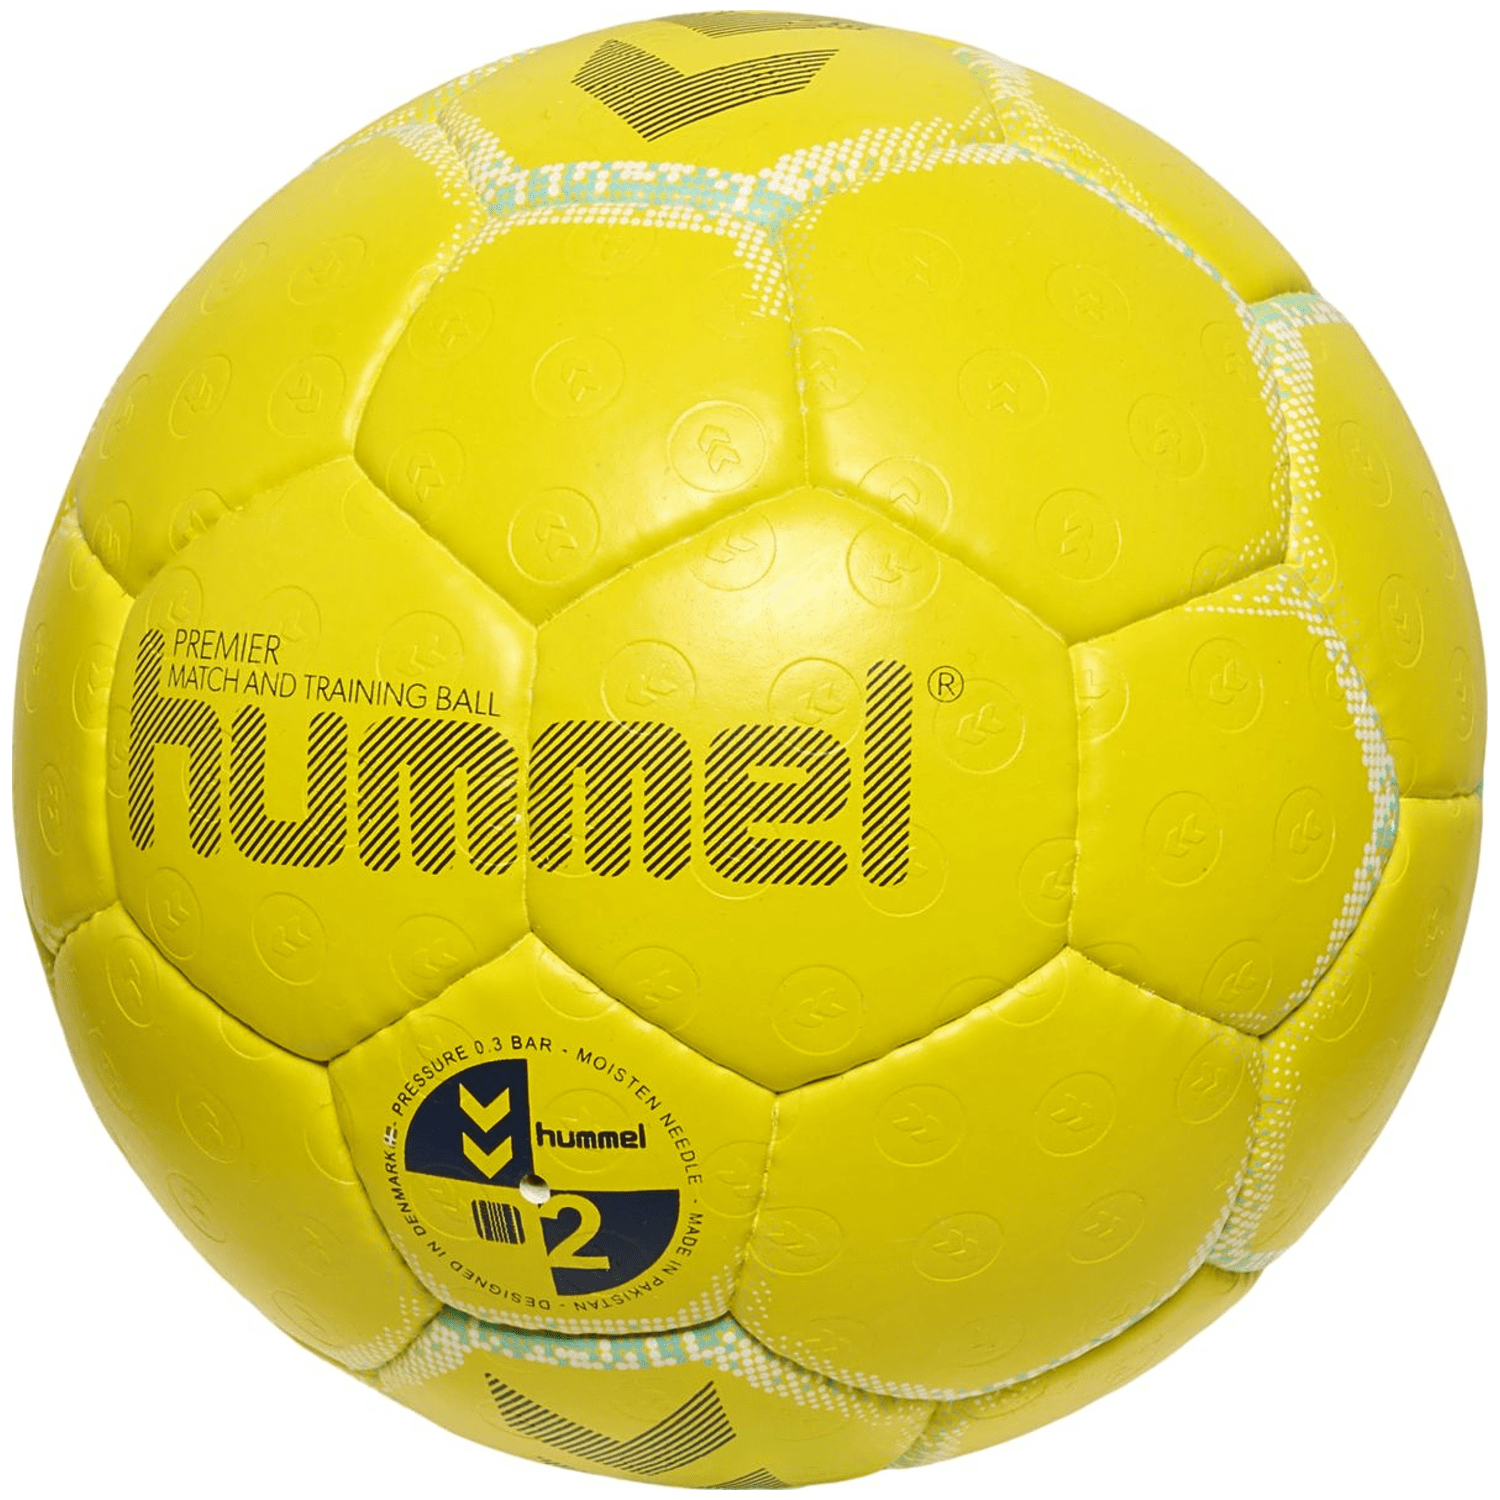 Hummel Premier HB Handball